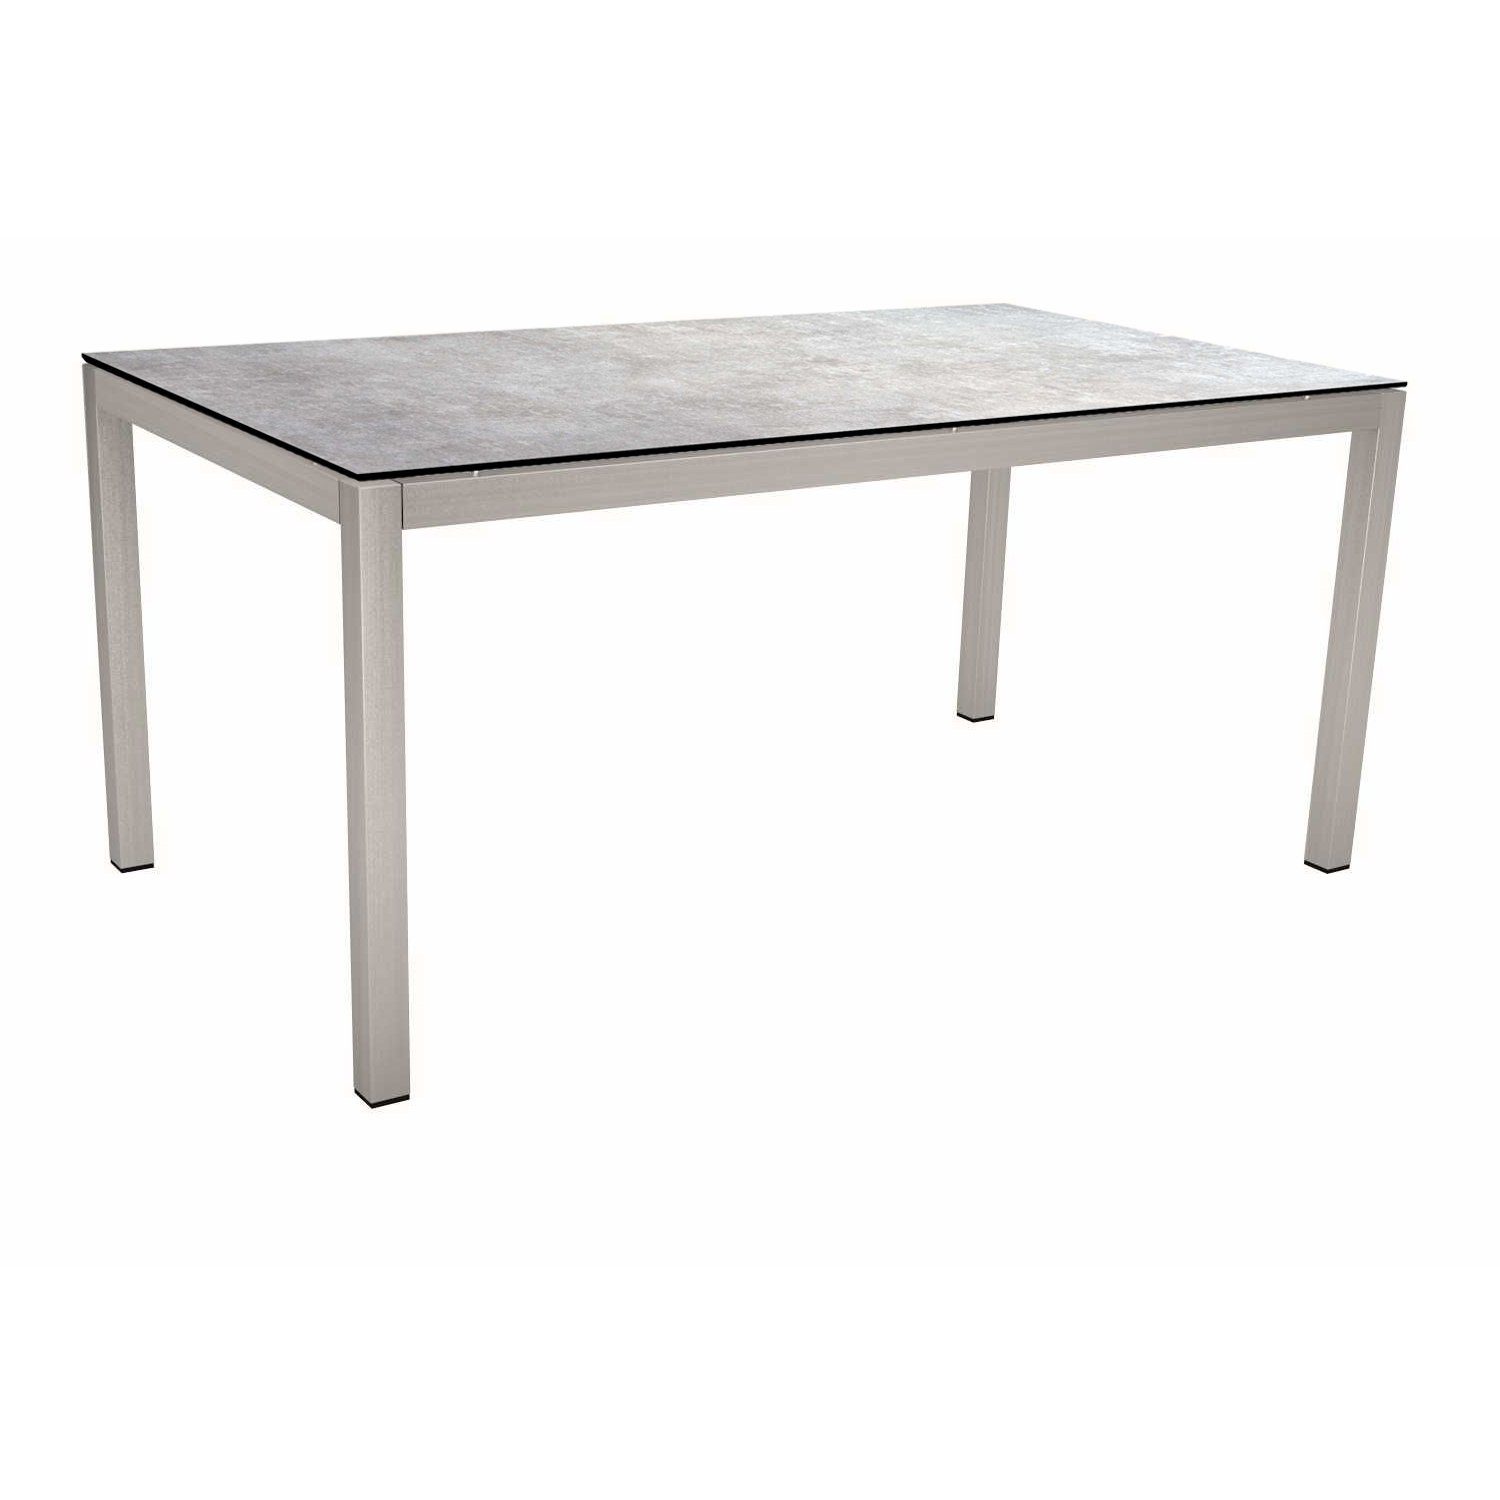 Stern Tischsystem, Gestell Edelstahl Vierkantrohr, Tischplatte HPL Metallic grau, 130x80 cm